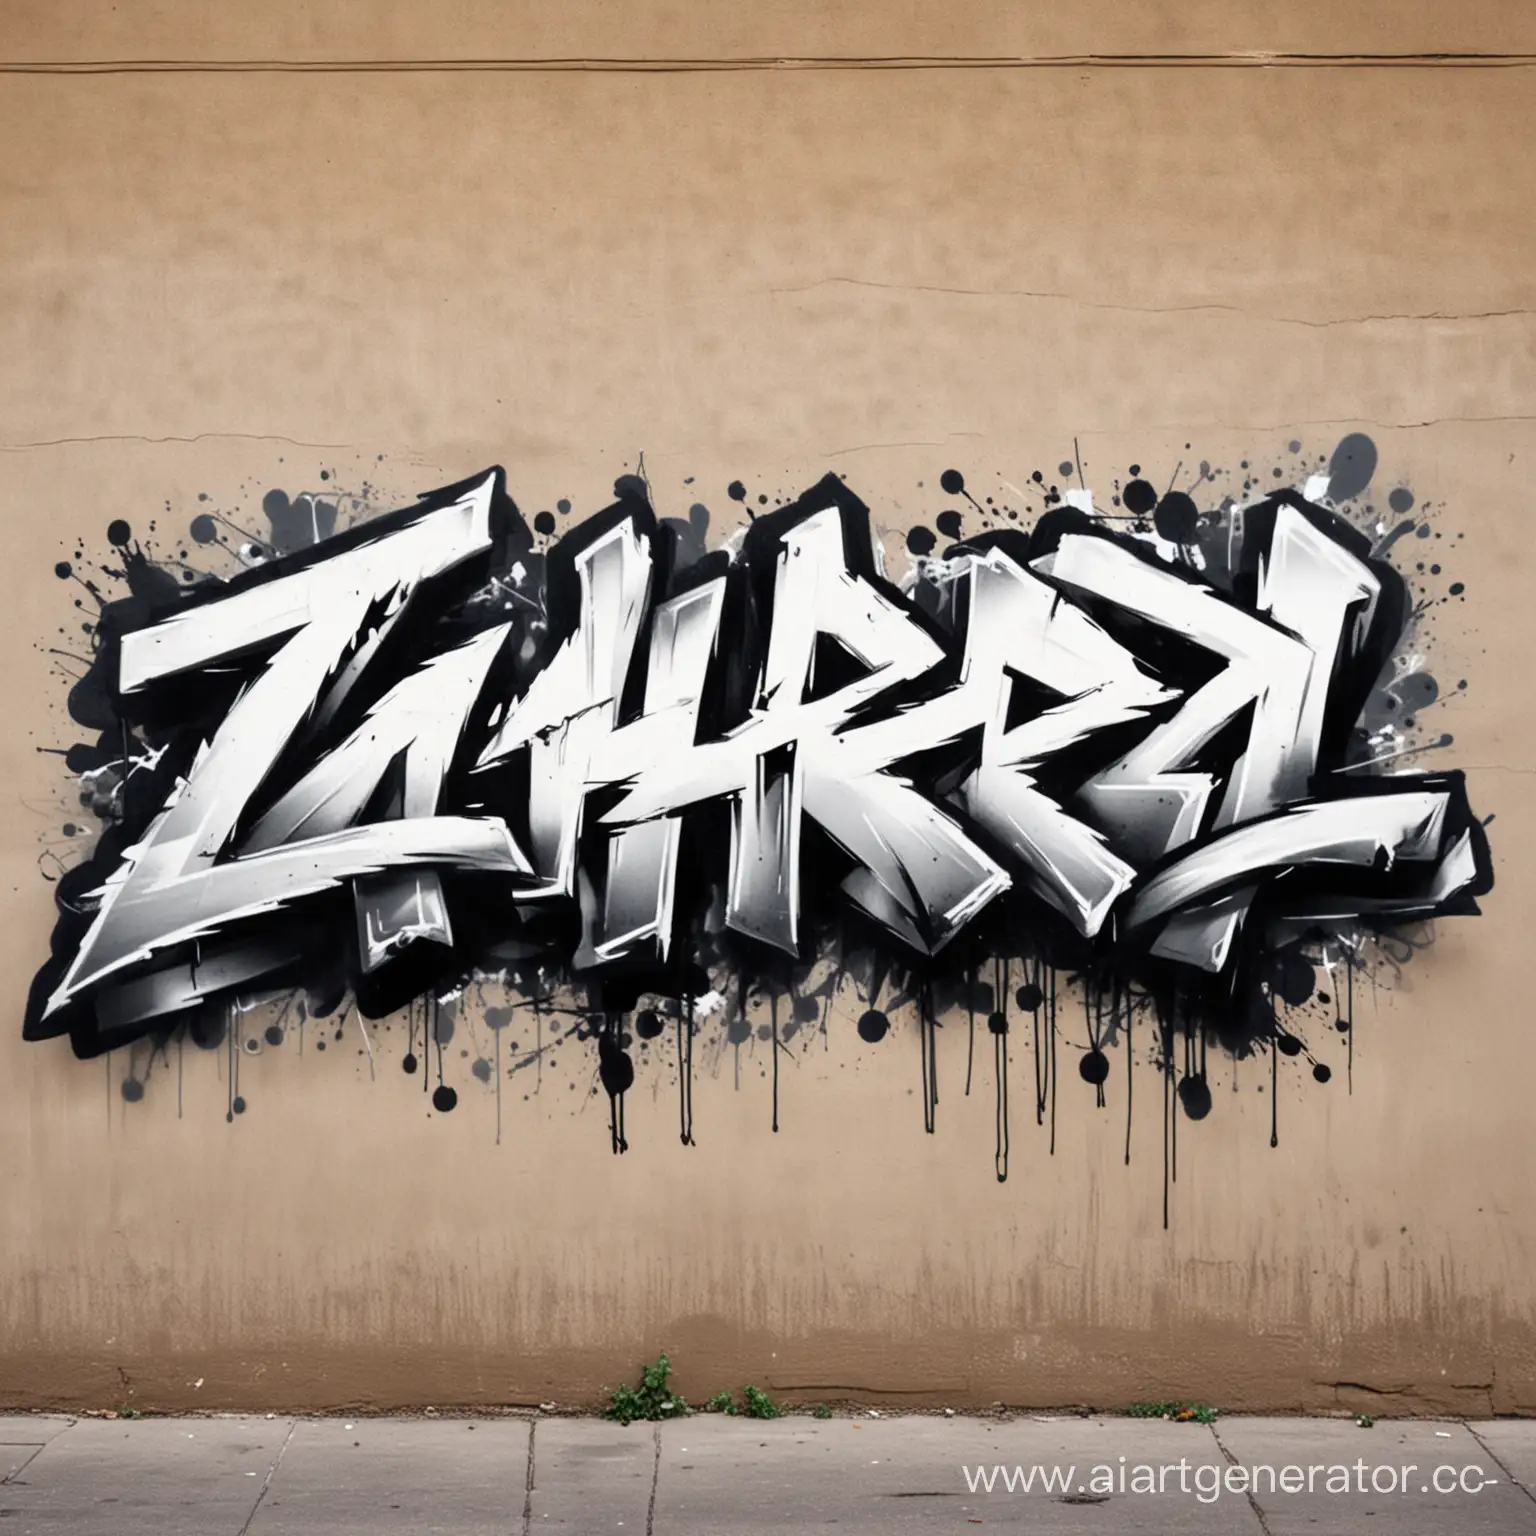 Urban-Street-Art-ZAHARD-Tag-in-Graffiti-Style